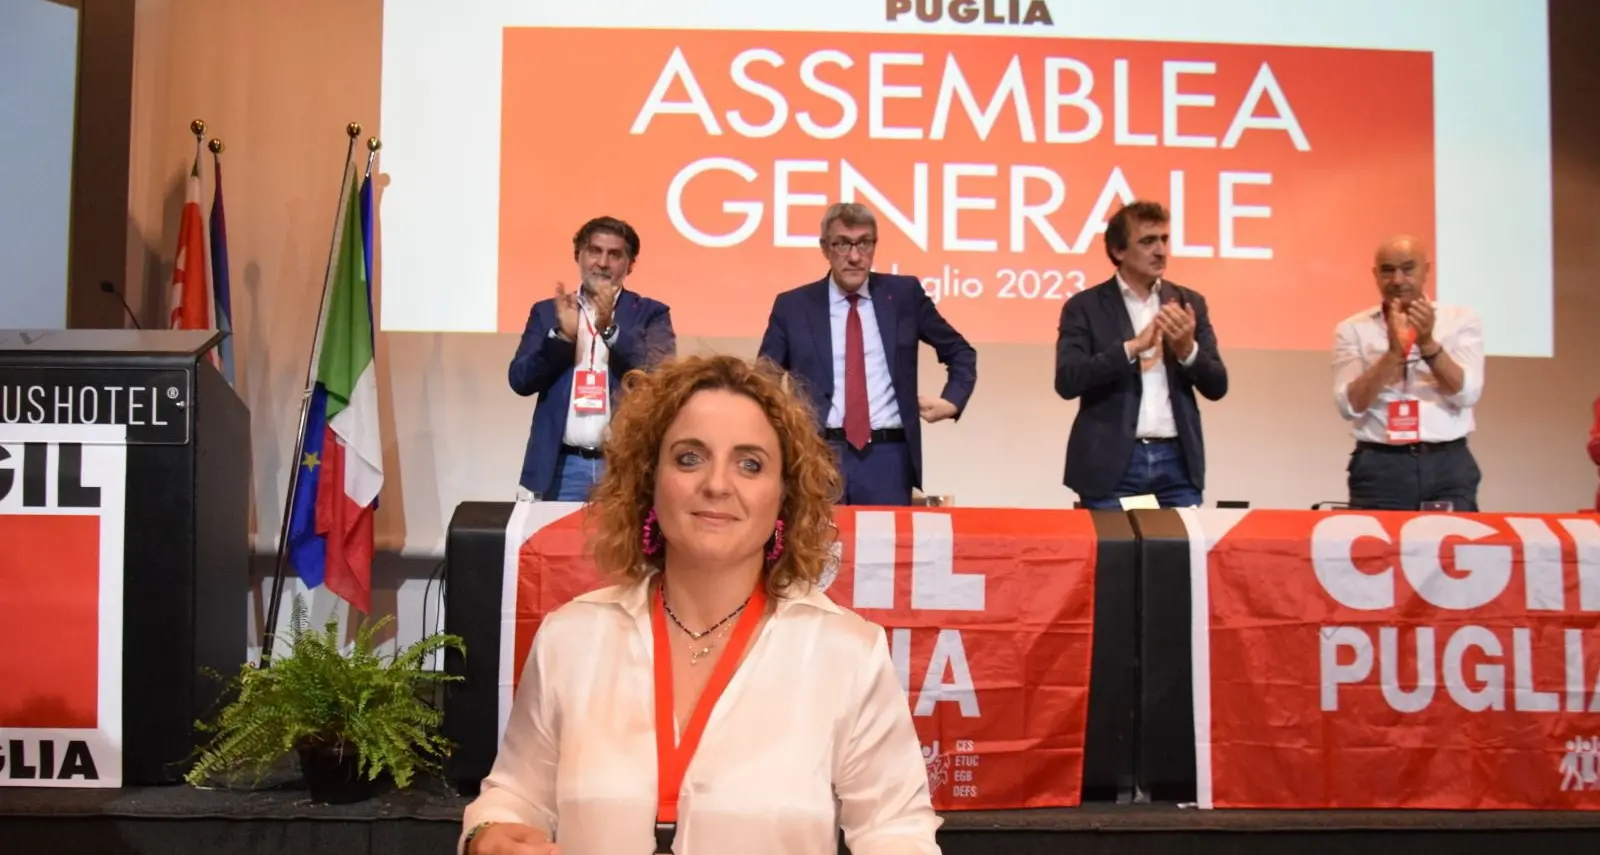 Le priorità di Gigia Bucci, Cgil Puglia: «Welfare, industria, ambiente e sfruttamento. Il sindacato riconquisti i giovani»